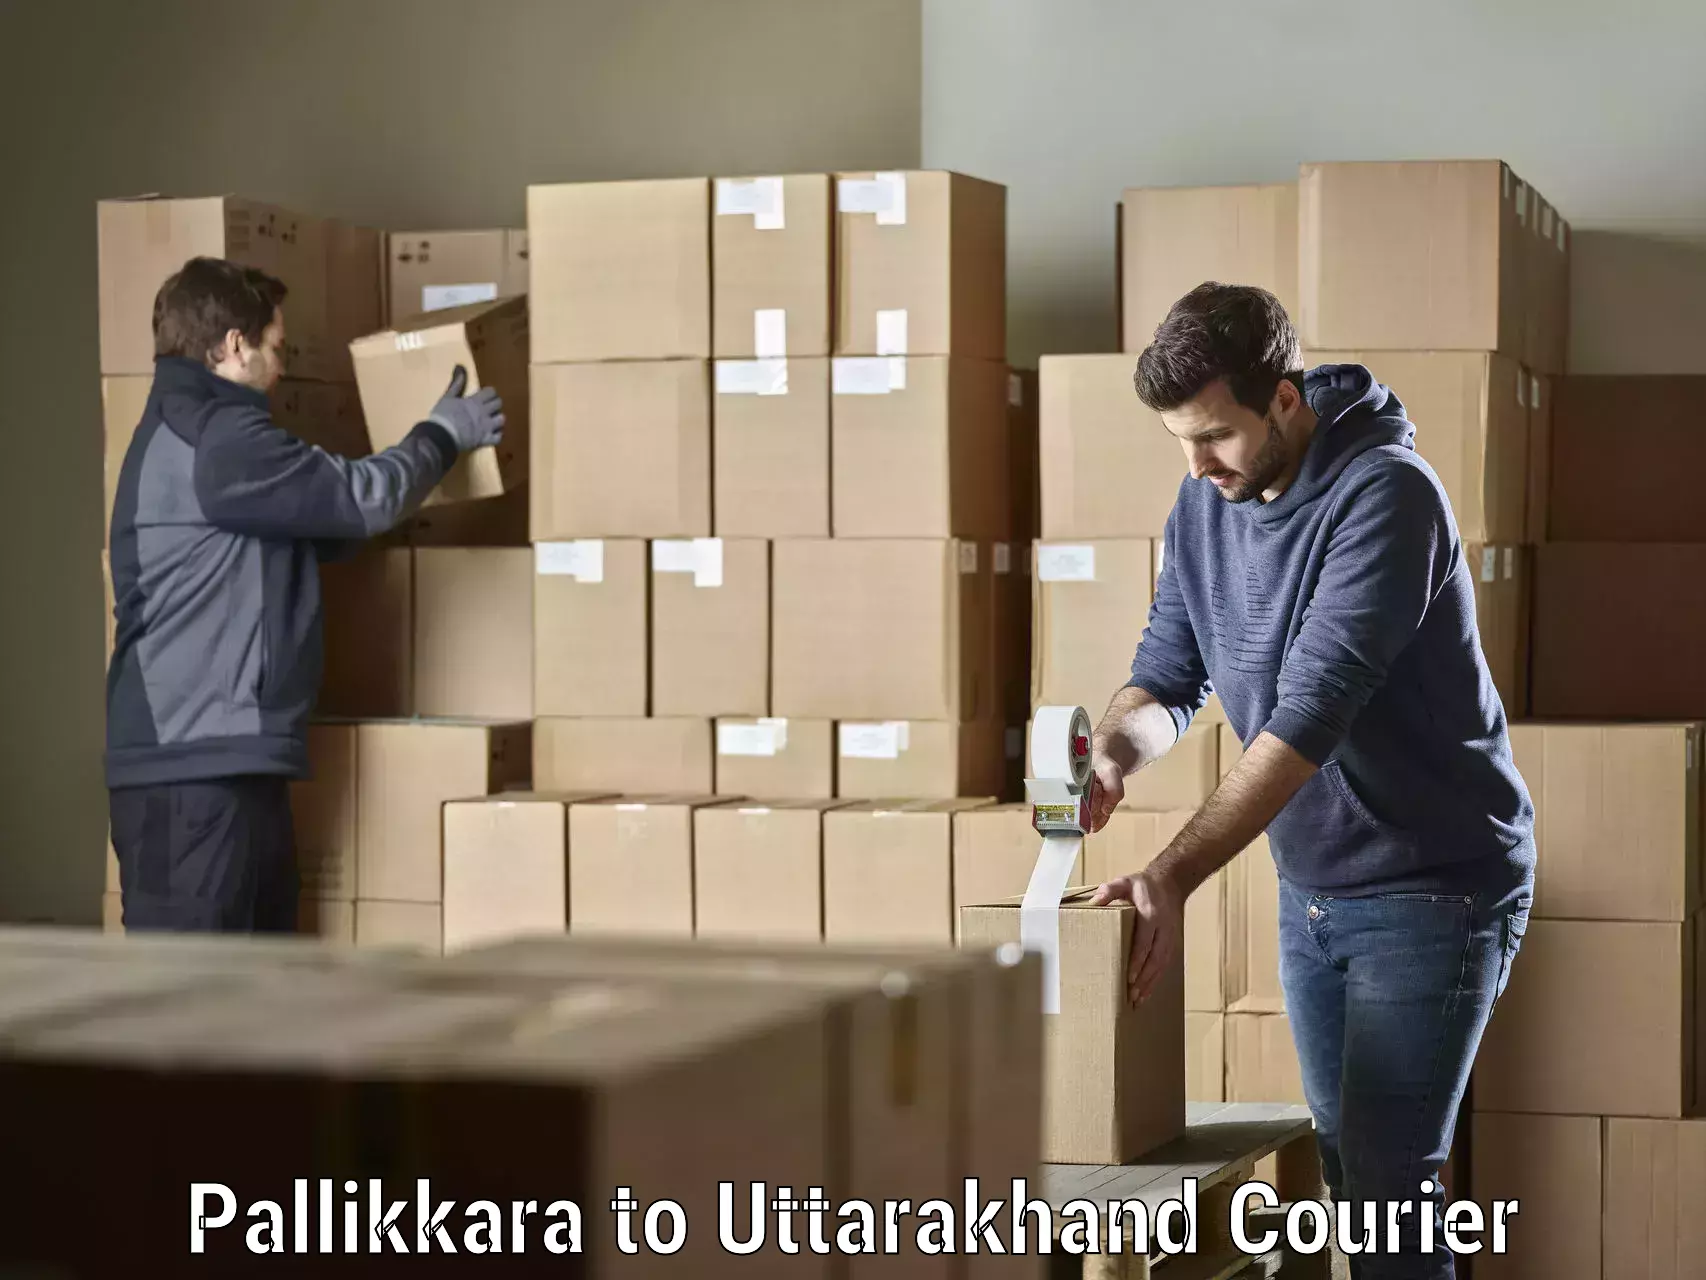 Efficient freight service Pallikkara to Uttarakhand